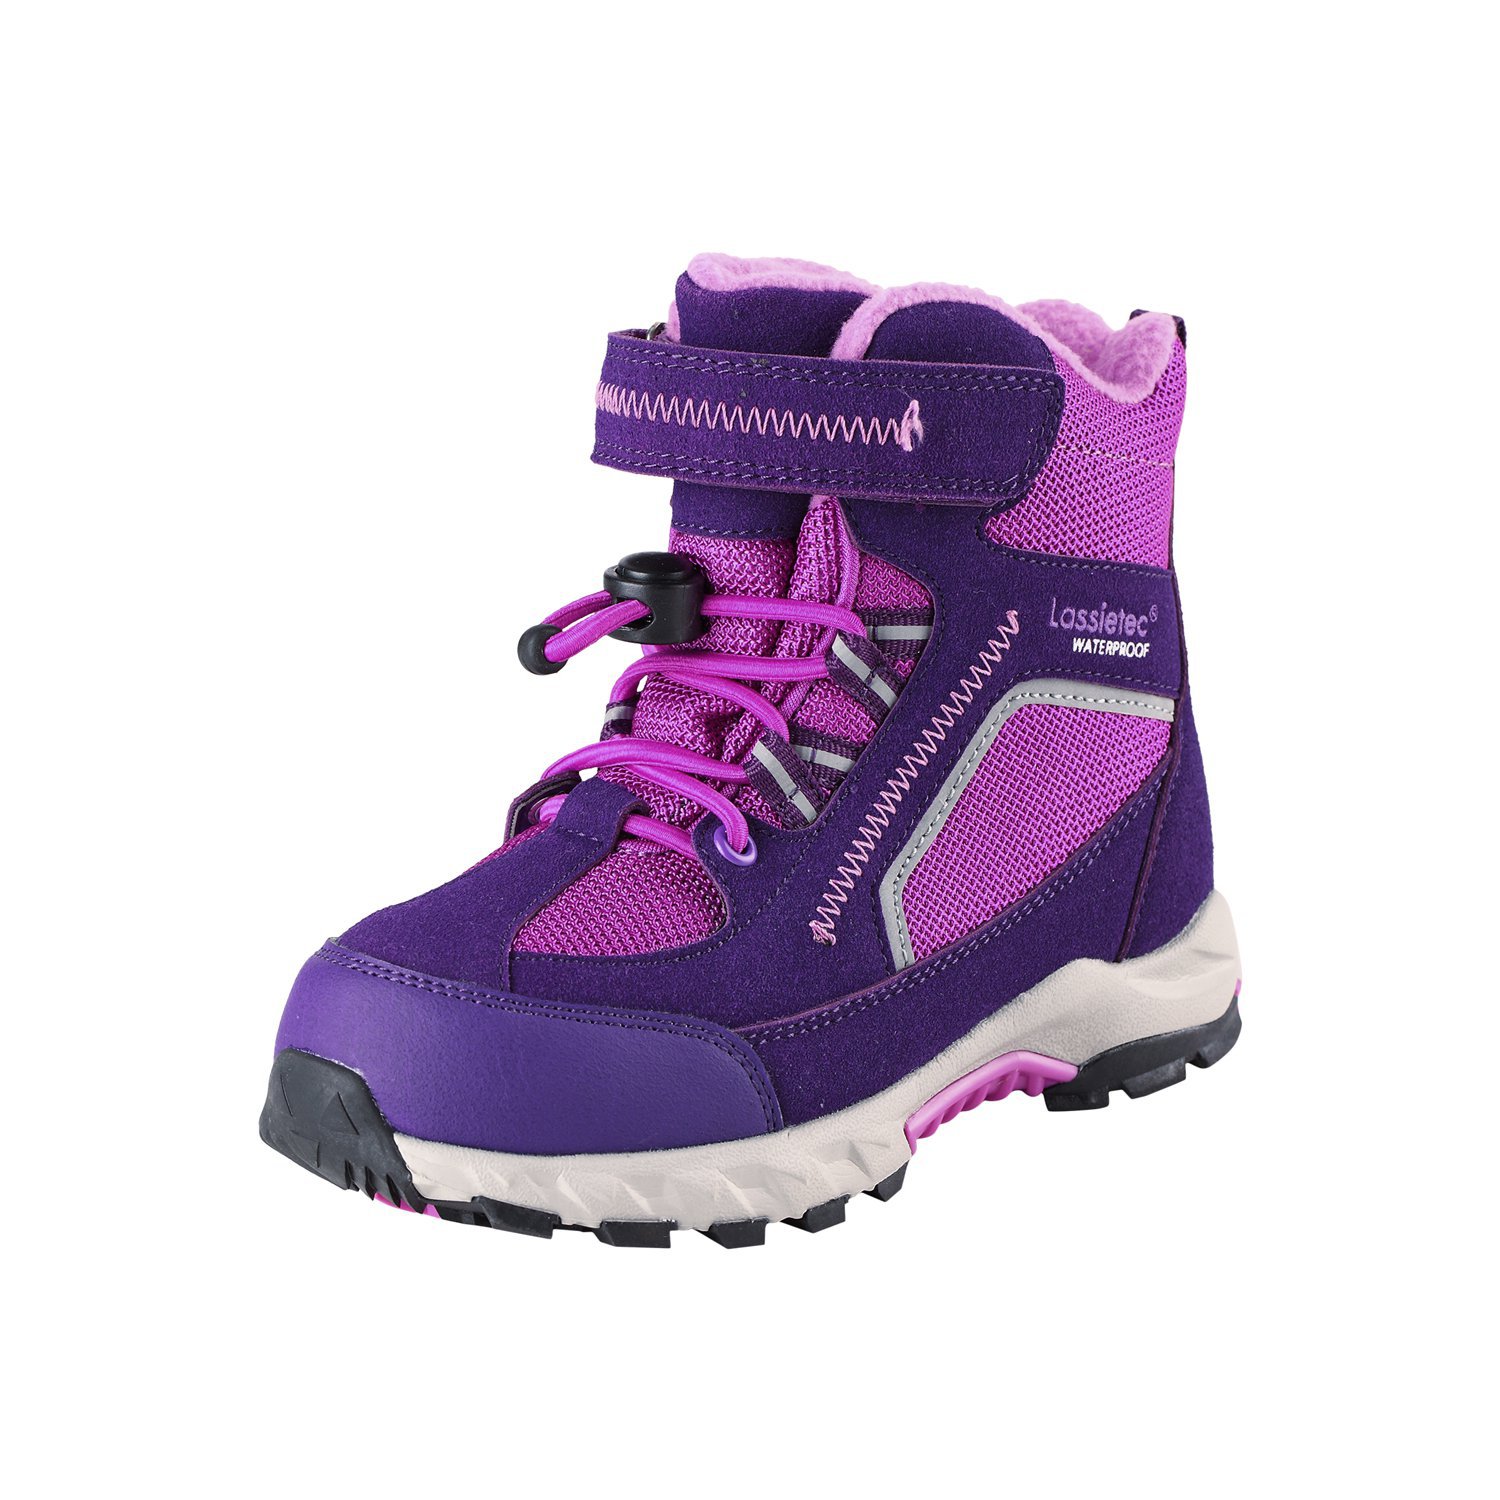 Ботинки LassieTec Carlisle (фиолетовый) 47701 769112 5950 купить в Москвена Диномама.ру